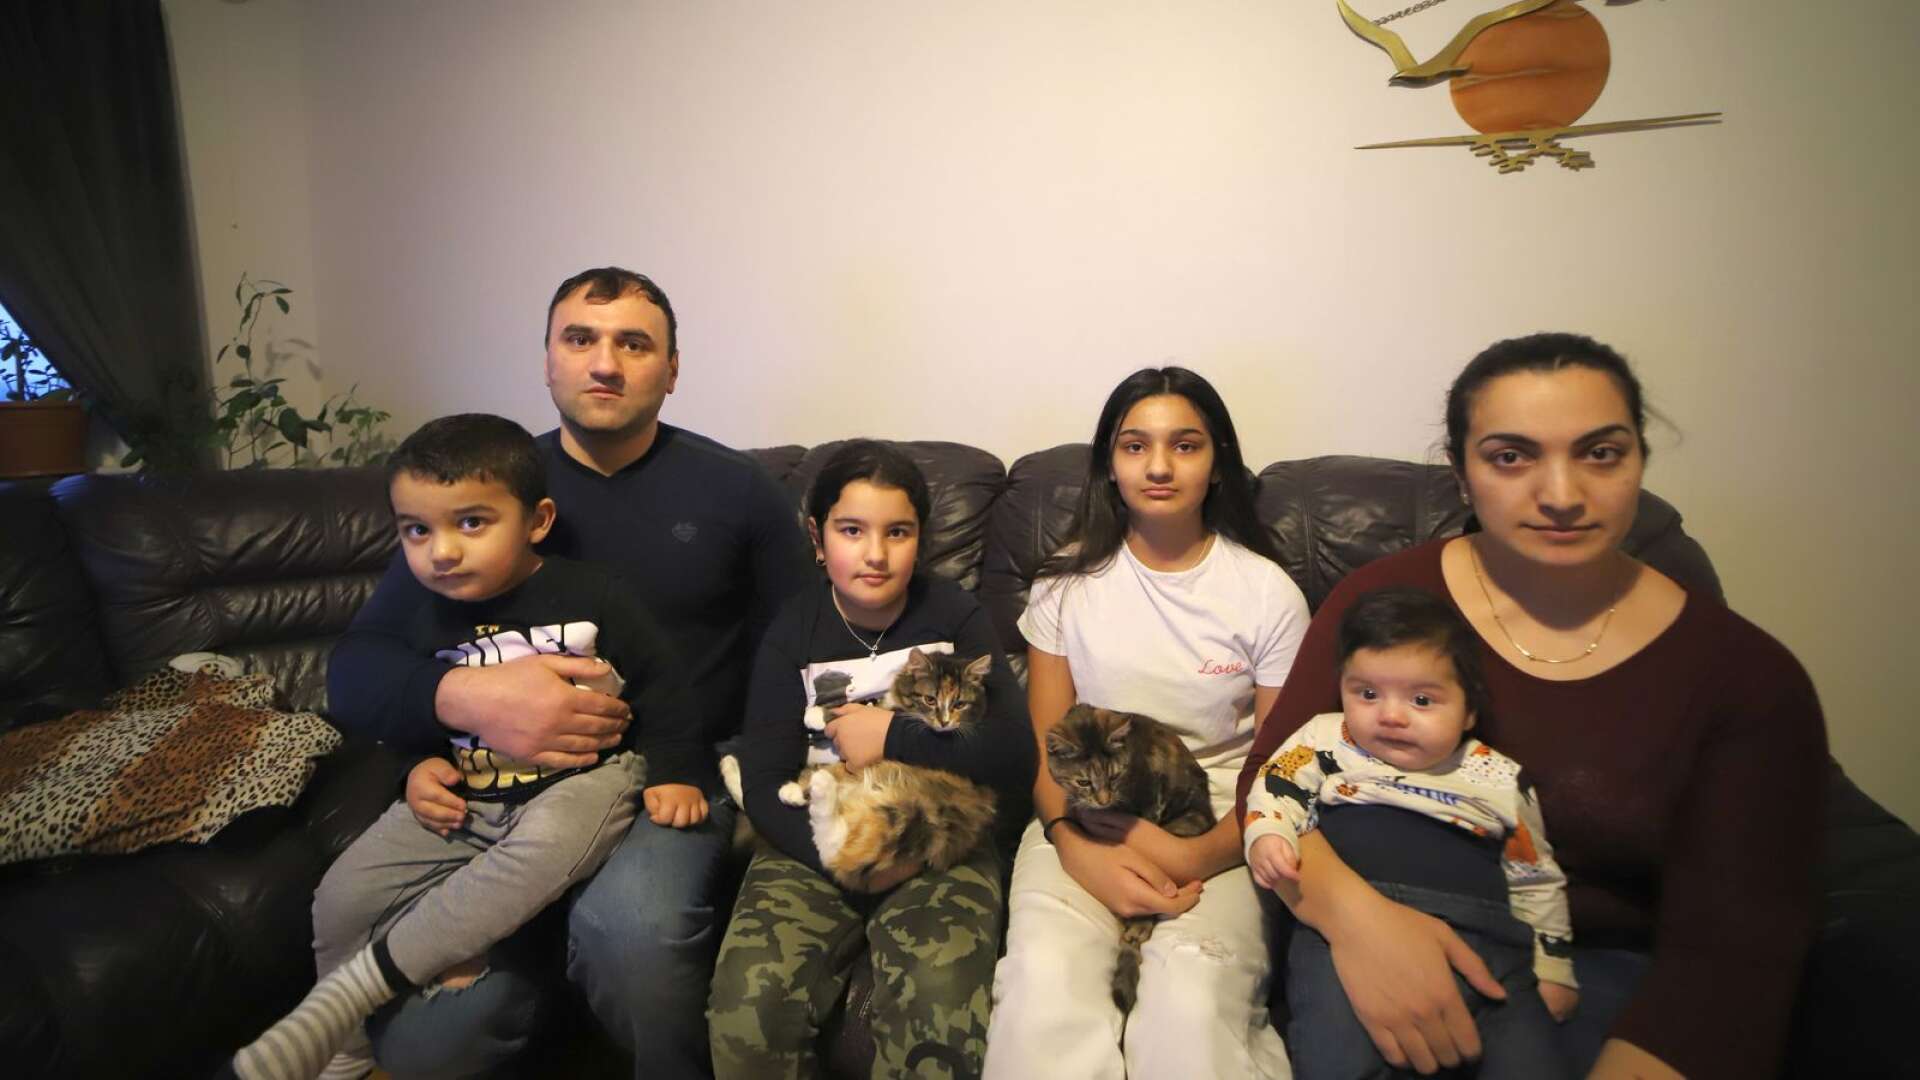 Familjen är utvisningshotad trots att de bott i Sverige sedan 2010 och är rotade i Billingsfors. Hassan Khudoyan med hustrun Alina Sadoyan och barnen Xeme, 12, Eva, 7, Råhi, 3 och Ariana, 3 månader med katterna Fyzzy och Popie.